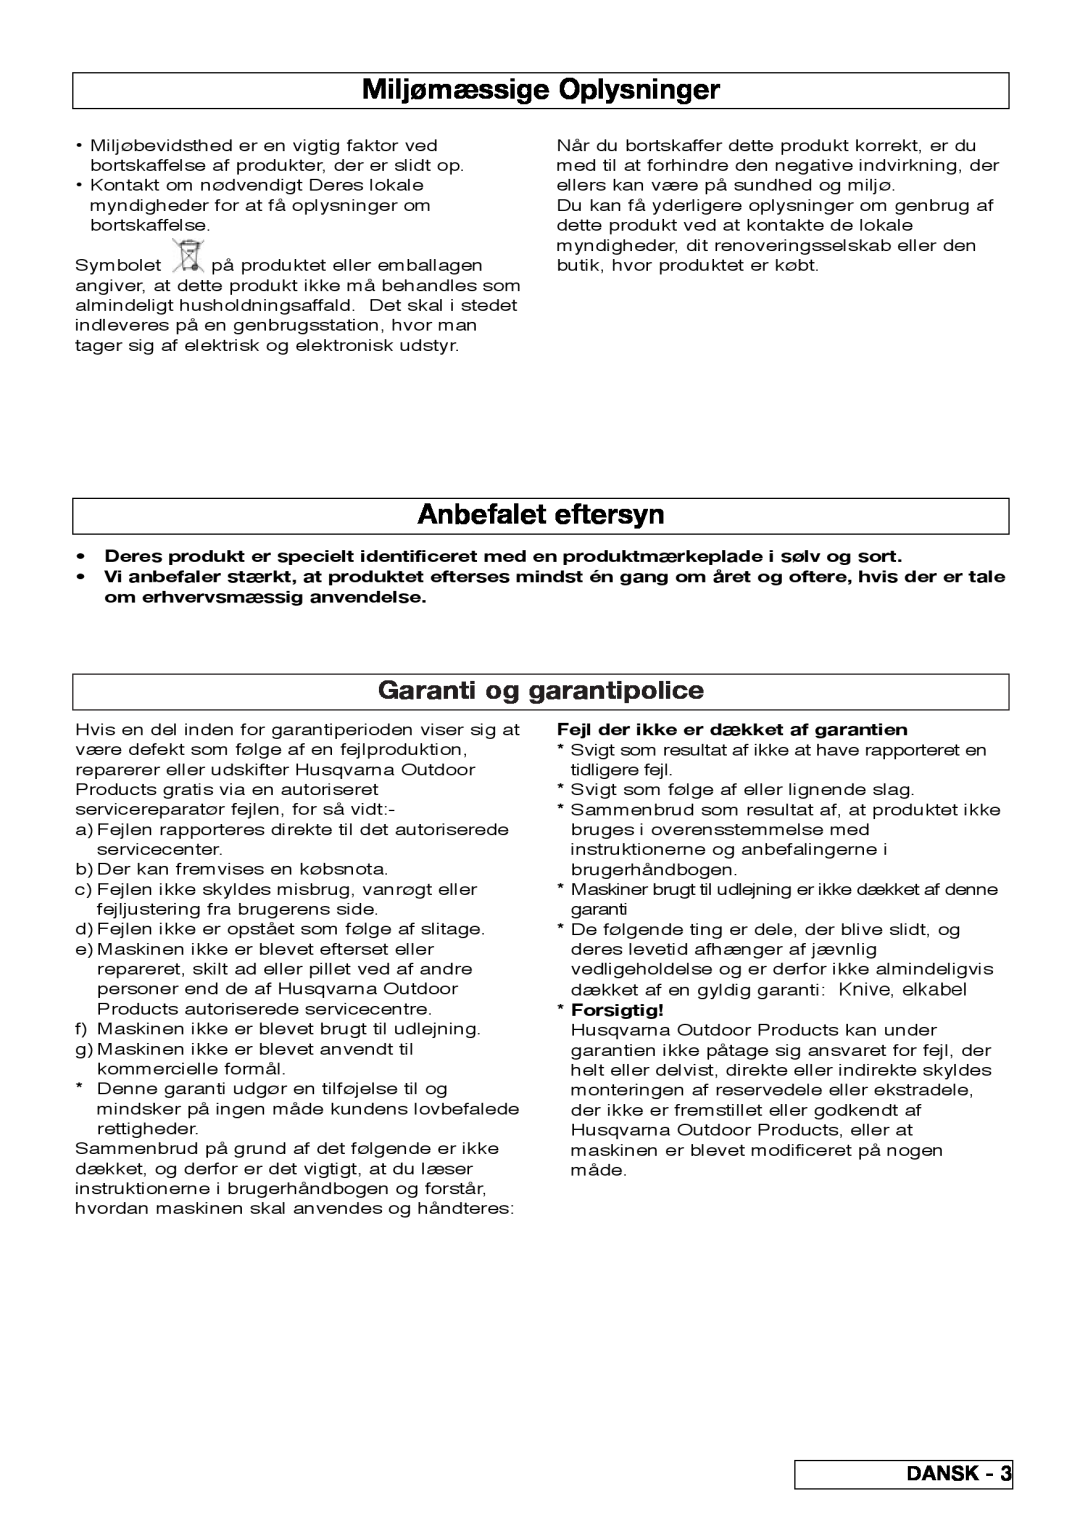 Flymo VM032 manual Miljømæssige Oplysninger, Anbefalet eftersyn, Garanti og garantipolice, Dansk, Forsigtig 